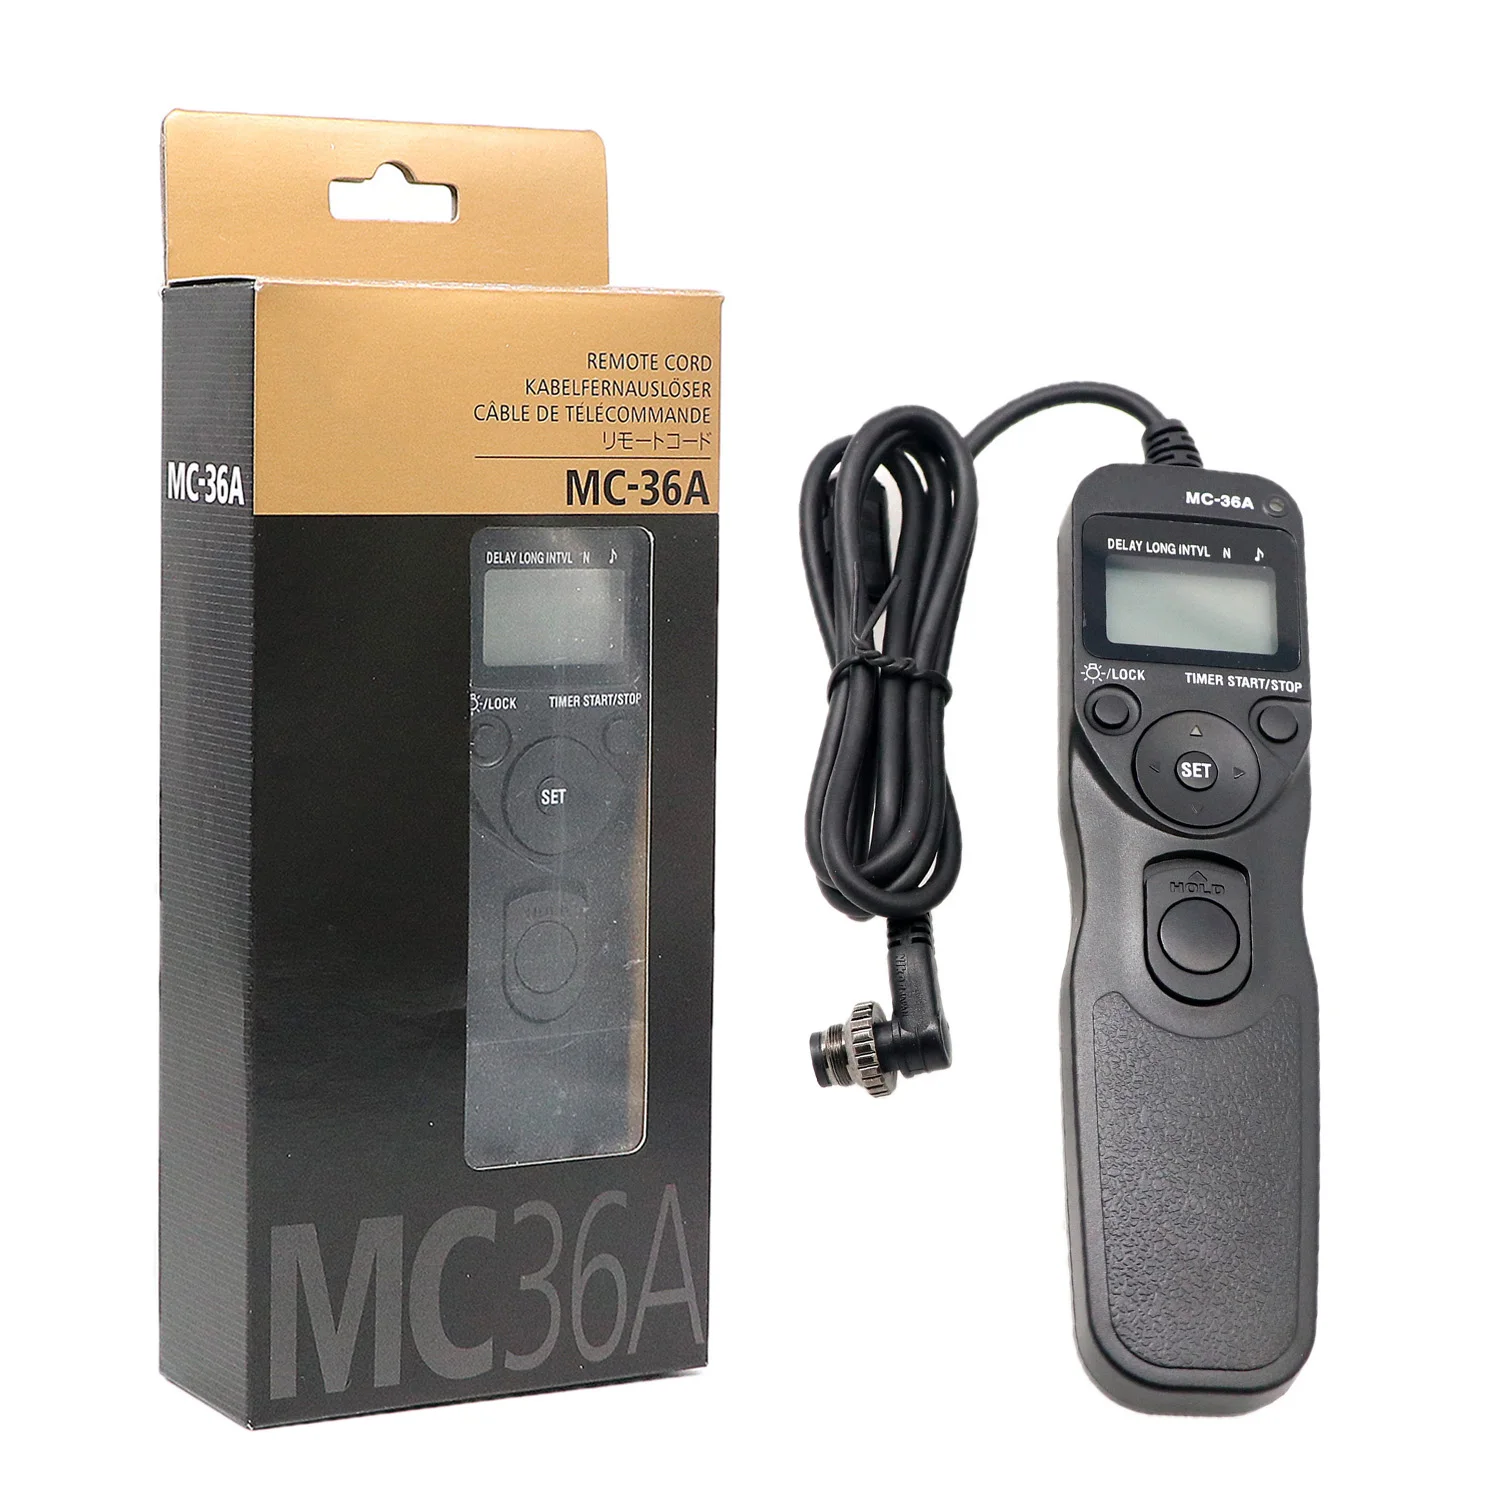 

MC-36A MC36A Multi-Function Remote Cord for Nikon D3 D3s D3x D4 D4s D200 D300 D300s D700 D800 D800E D810